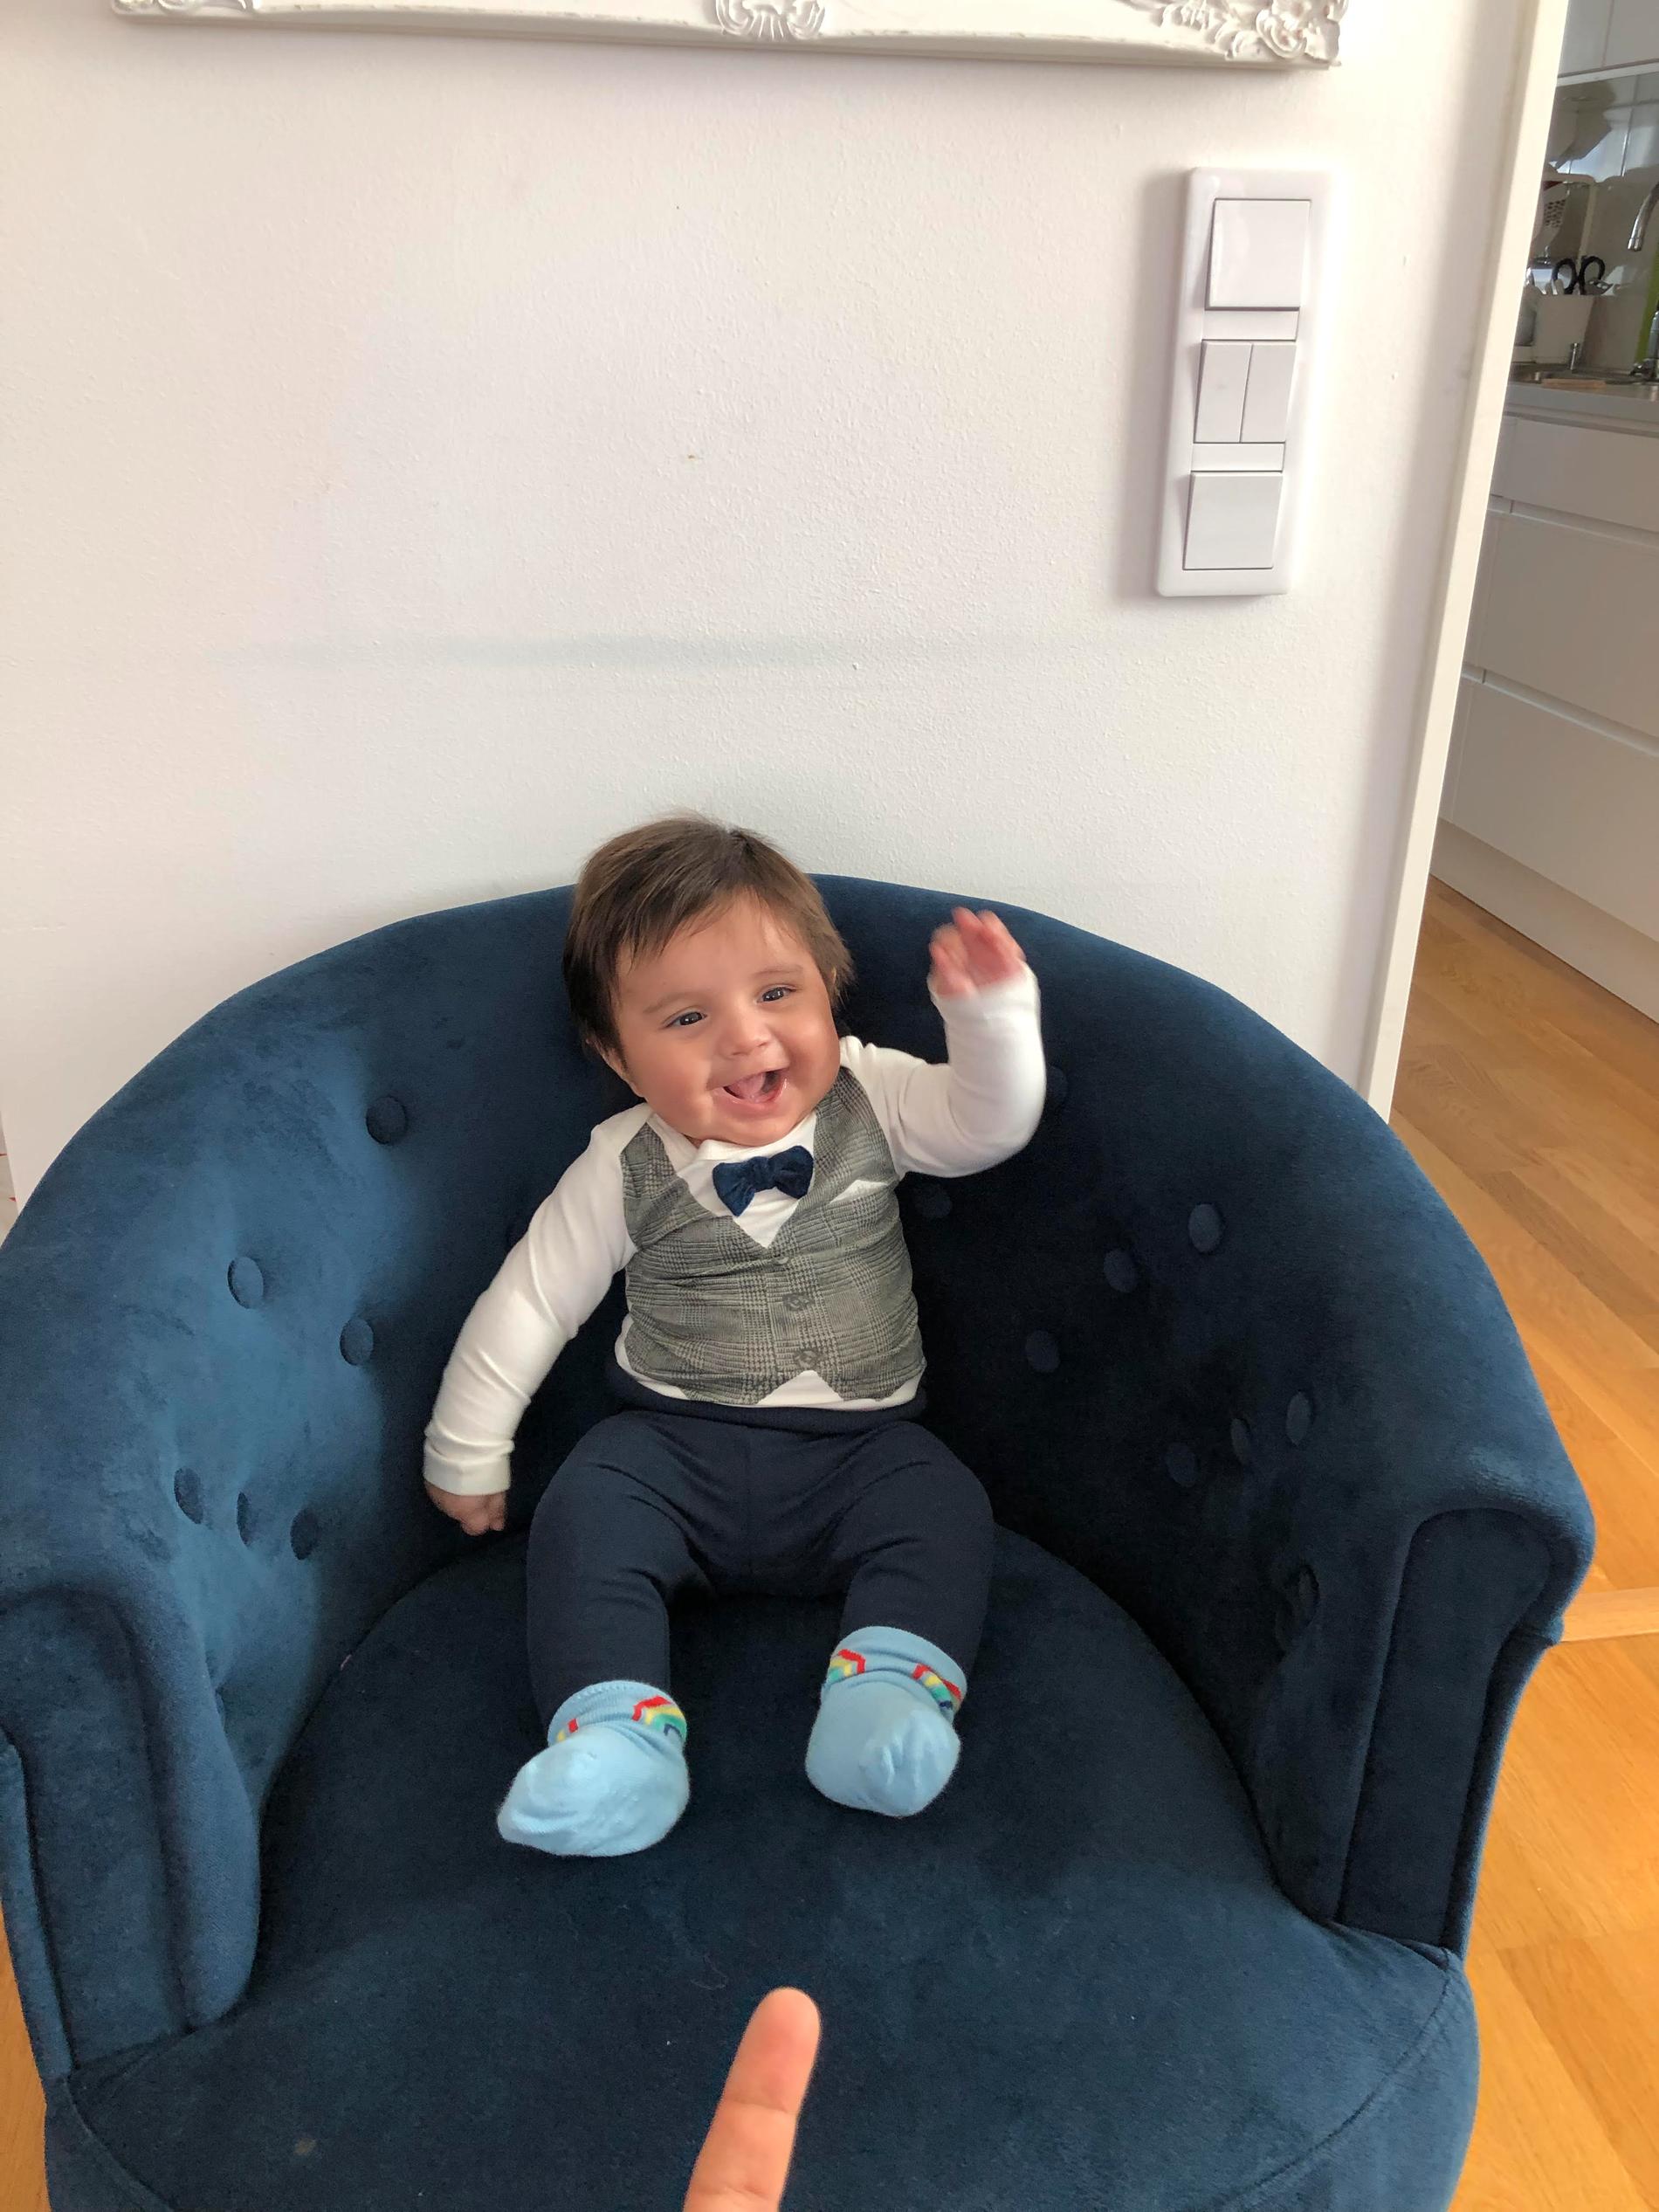 Liam föddes i februari med mycket hår. Nu är han fyra månader och han har fått klippas, hälsar mamman Shady Motlagh från Stockholm.